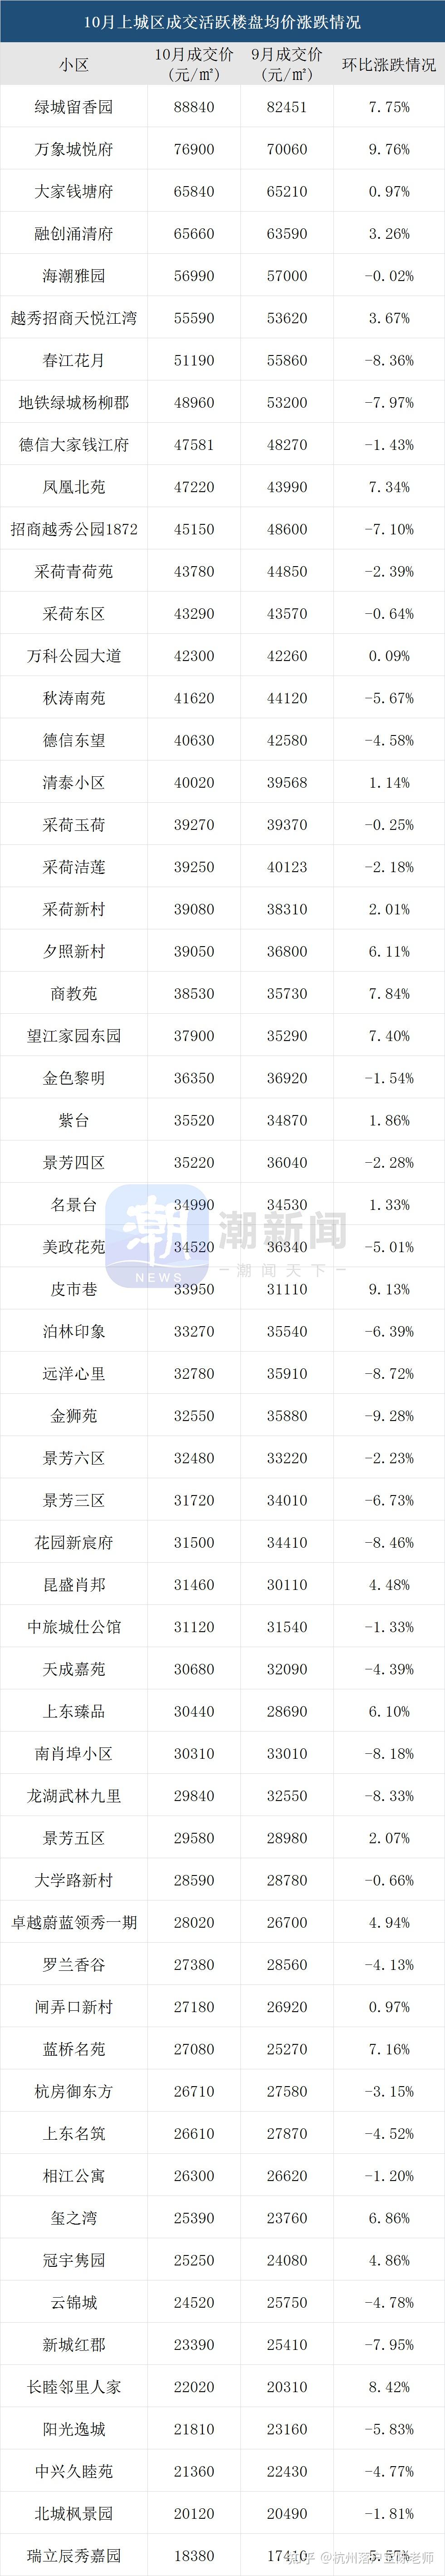 杭州房价涨幅全国第一二手房最新成交价格统计